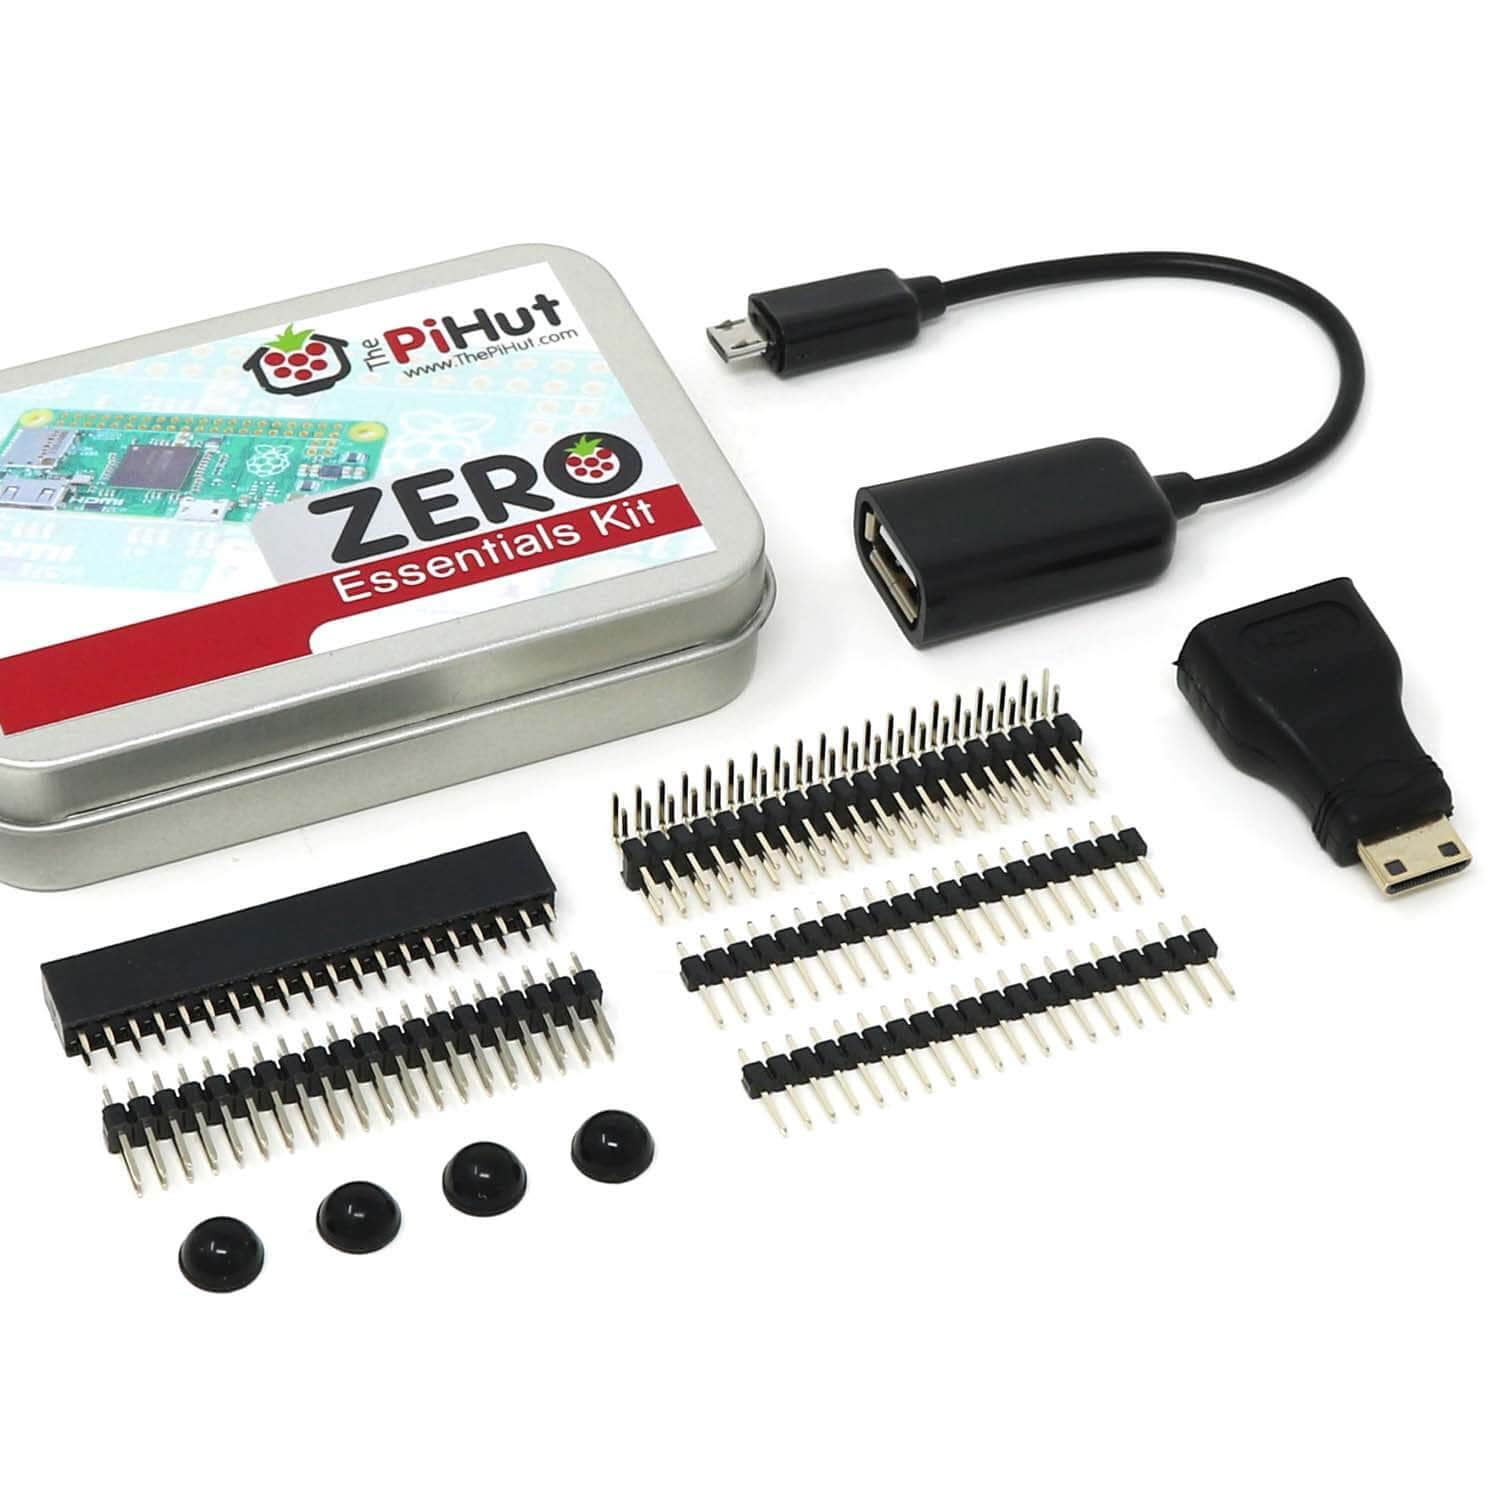 Raspberry Pi Zero W Starter Kit - The Pi Hut